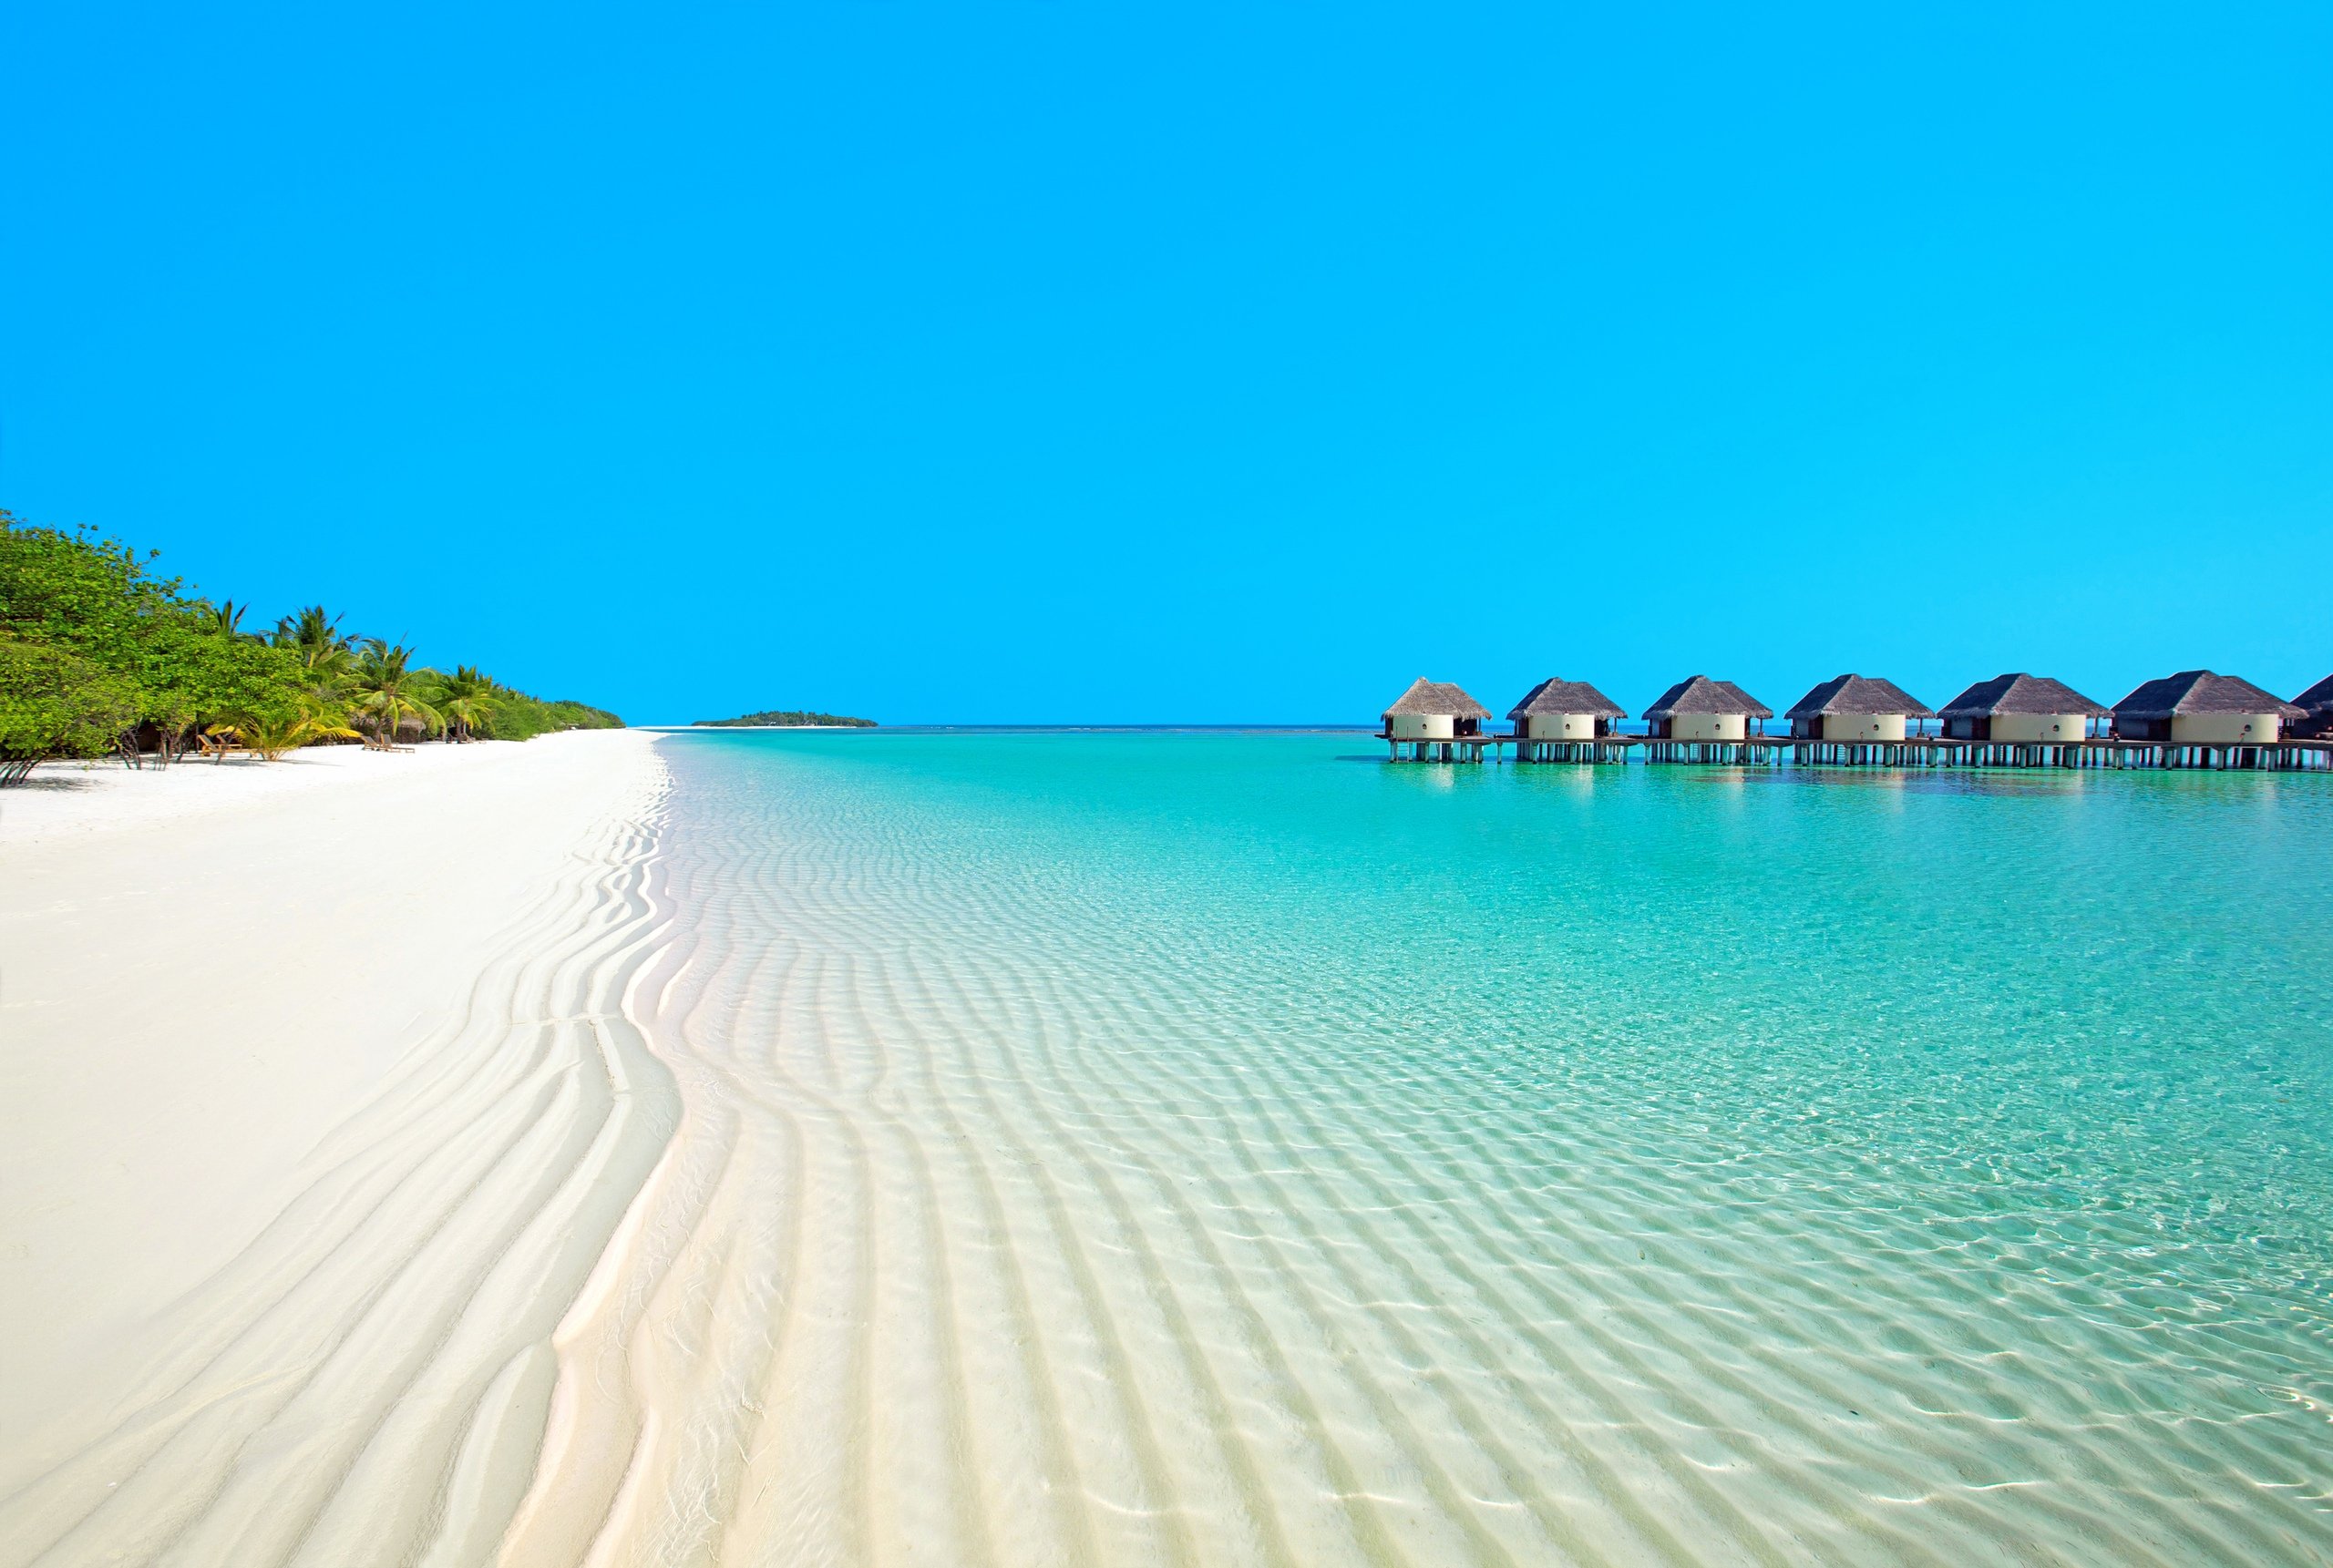 Остров Канухура Мальдивы. Парадайз Айленд Мальдивы. Остров Ваадху Мальдивы. Ла-Маддалена (архипелаг). Красивые места пляжи